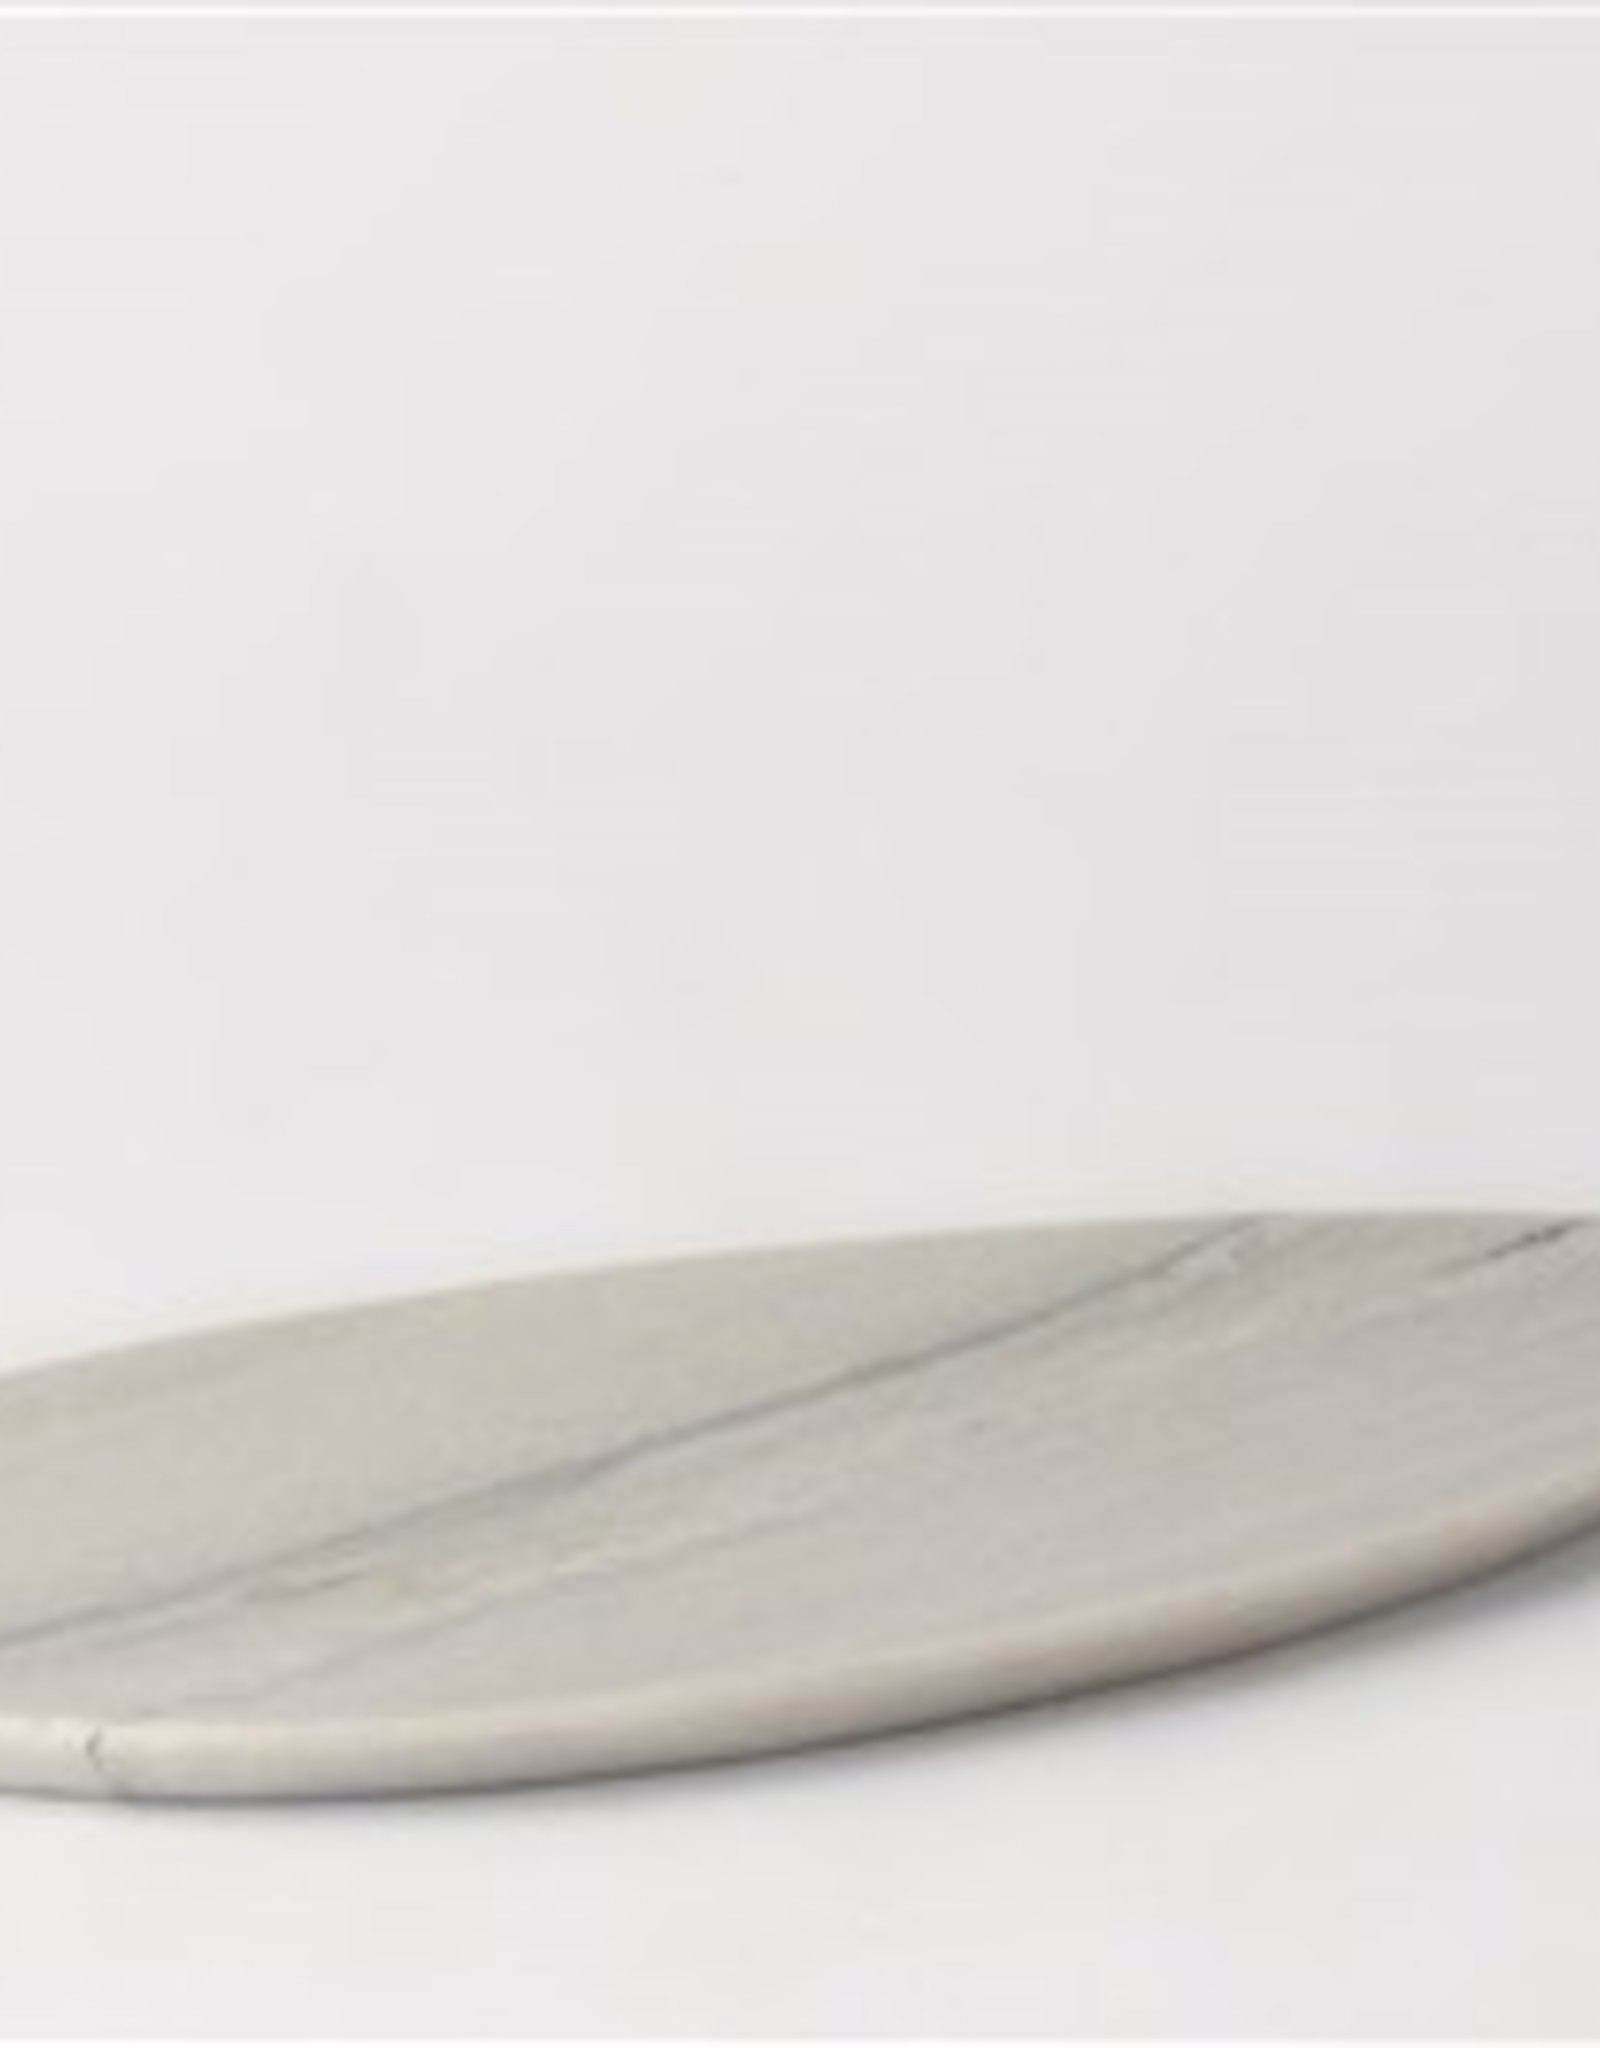 BIDK Home SM Stone Asymmetrical Platter - White Grey